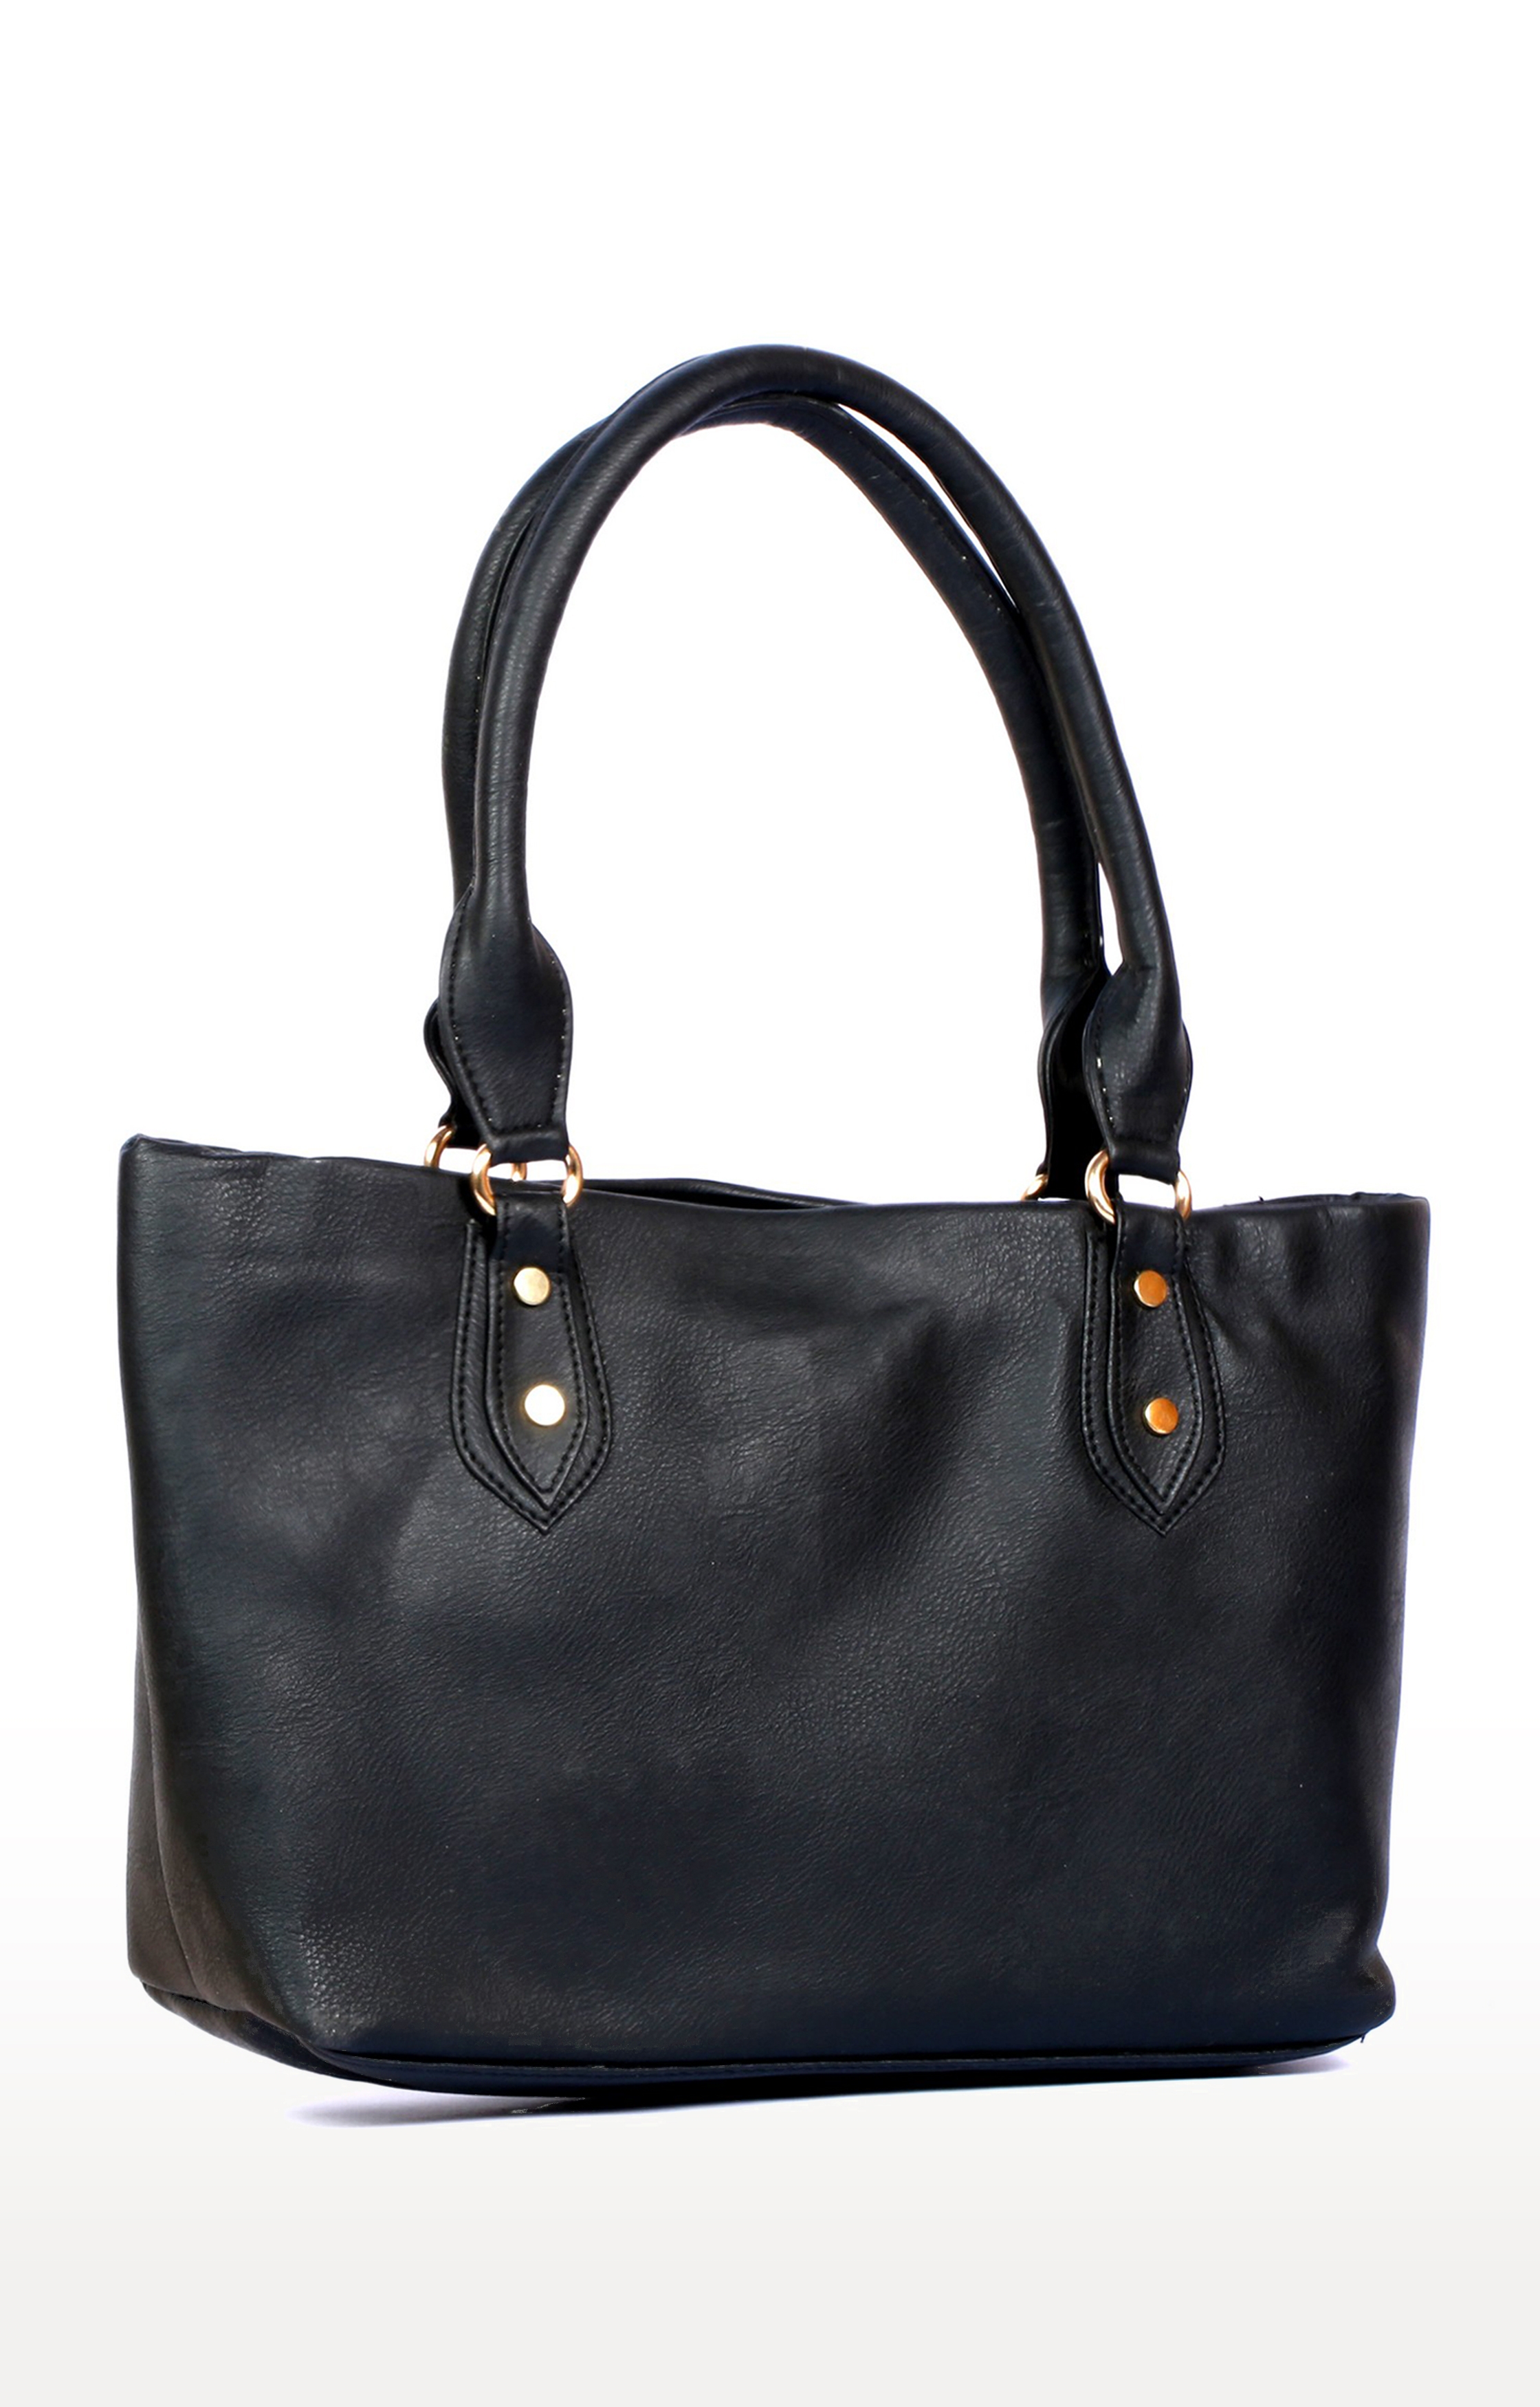 Lely's Plain Black Designer Handbag For Women